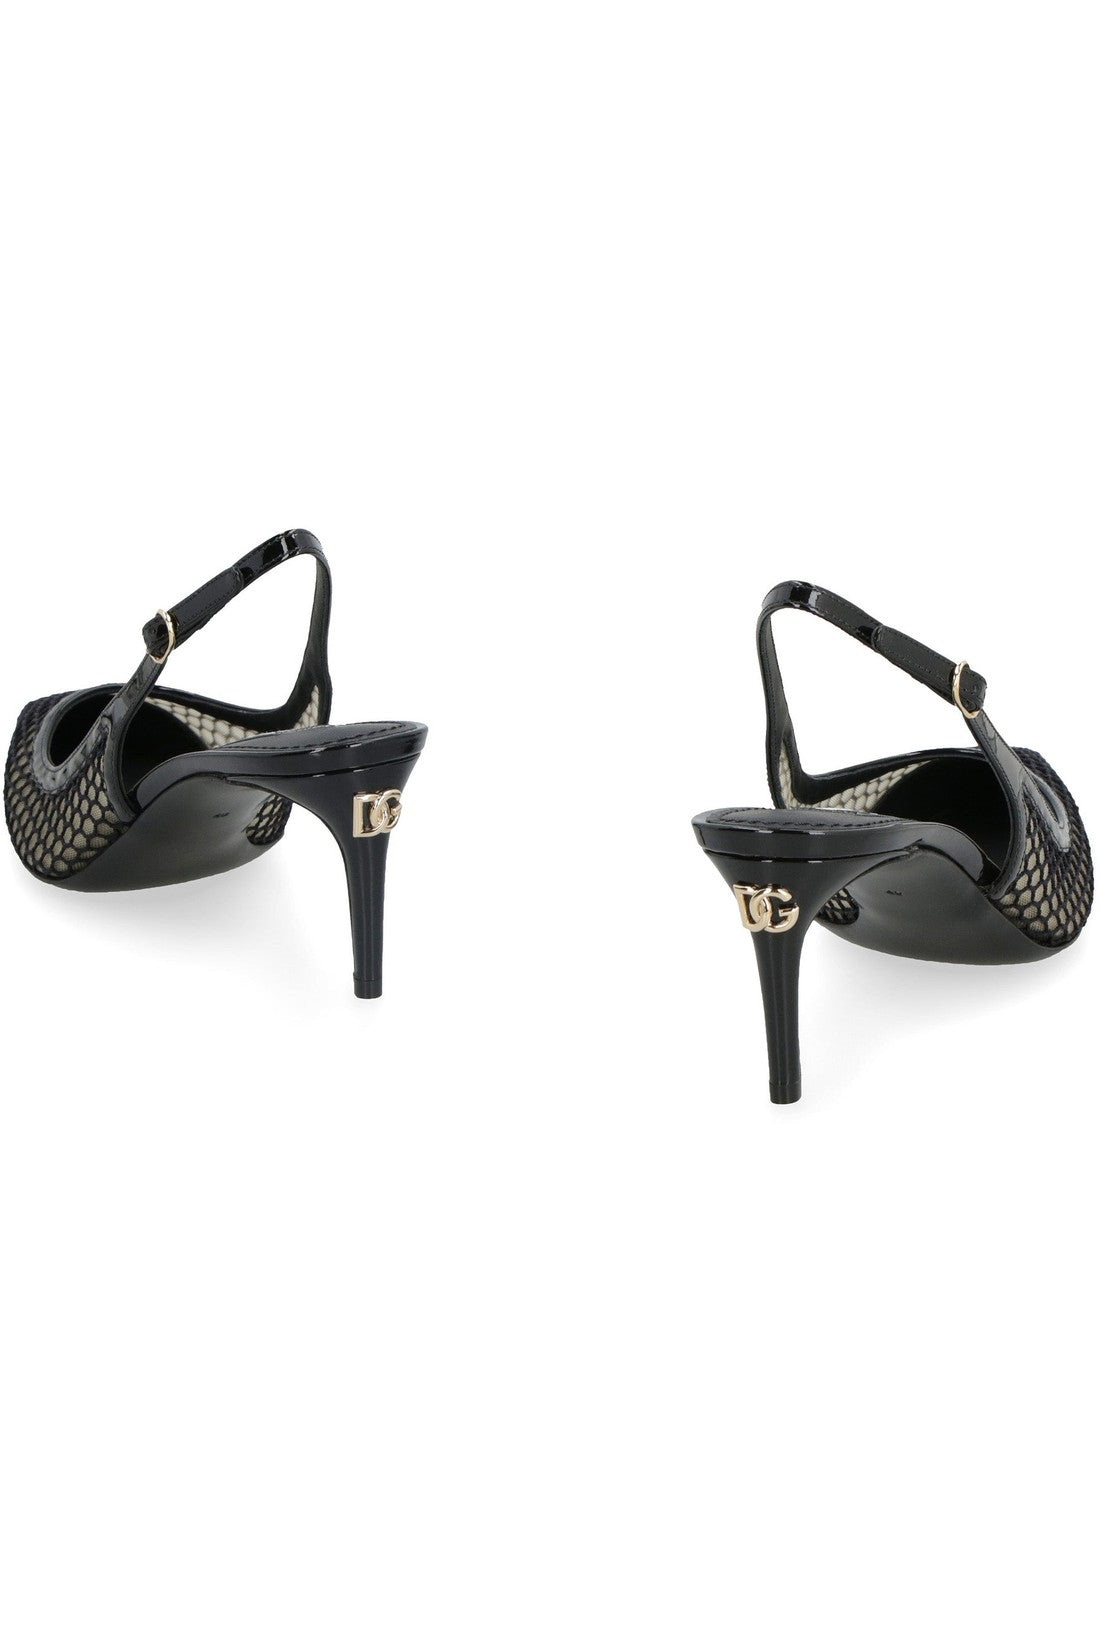 Dolce & Gabbana-OUTLET-SALE-Mesh slingback pumps-ARCHIVIST